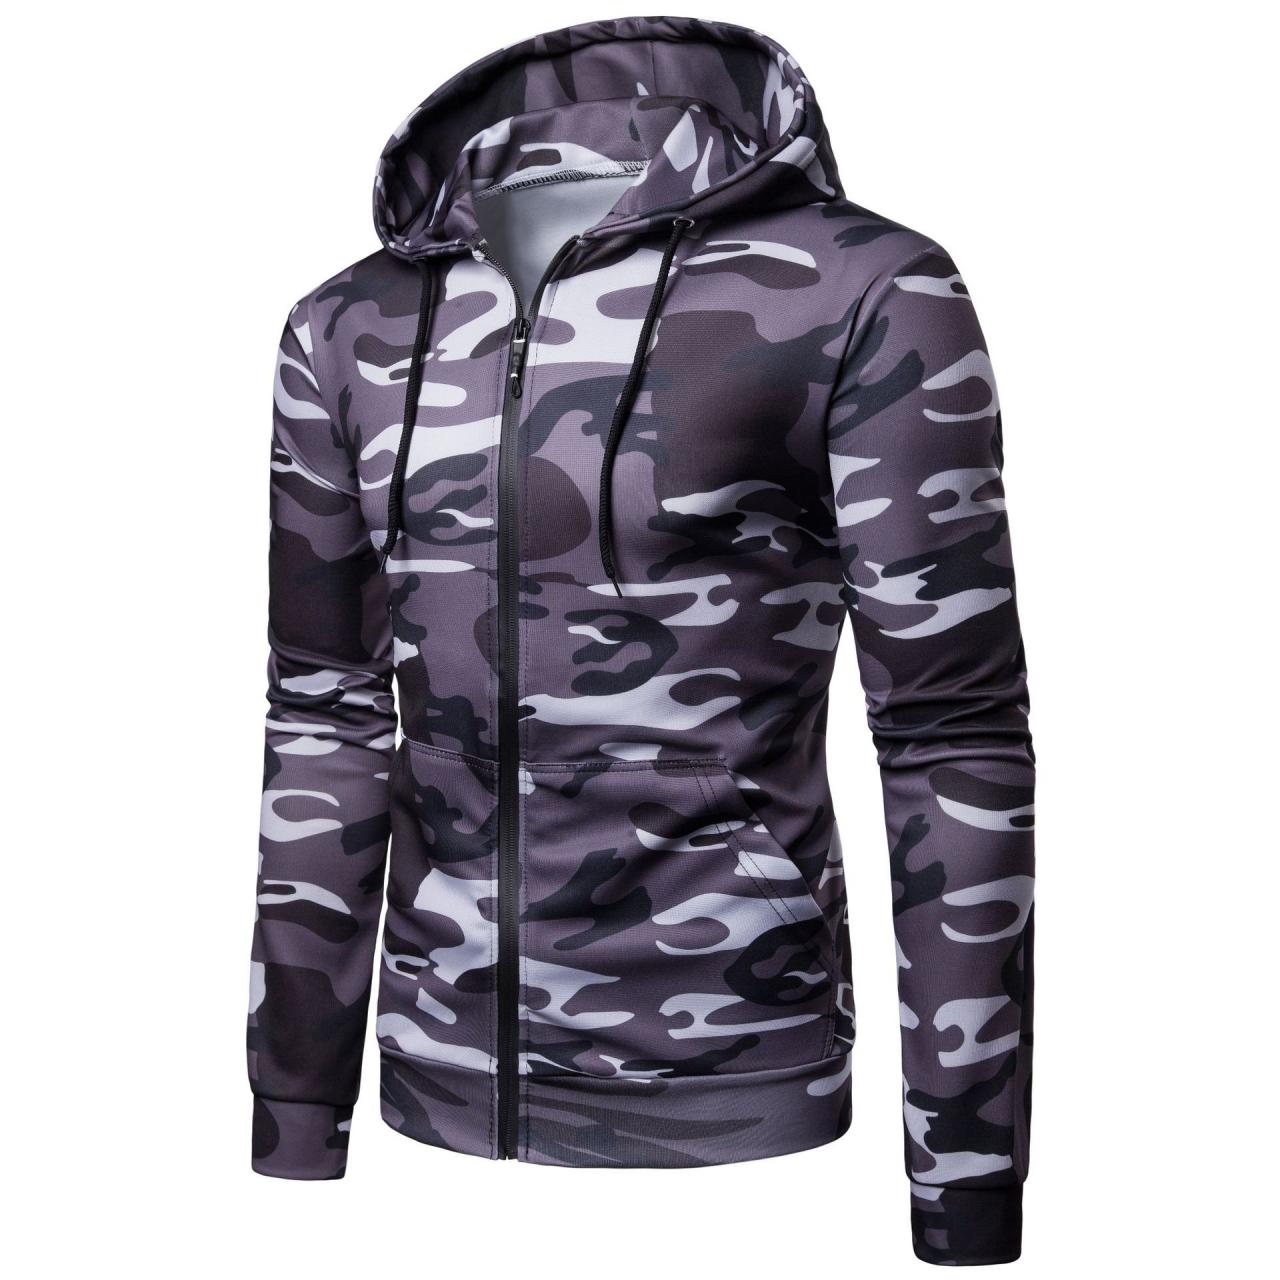 Men Camouflage Coat Spring Autumn Thin Slim Long Sleeve Zipper Hooded Jacket Windbreaker Outwear dark gray